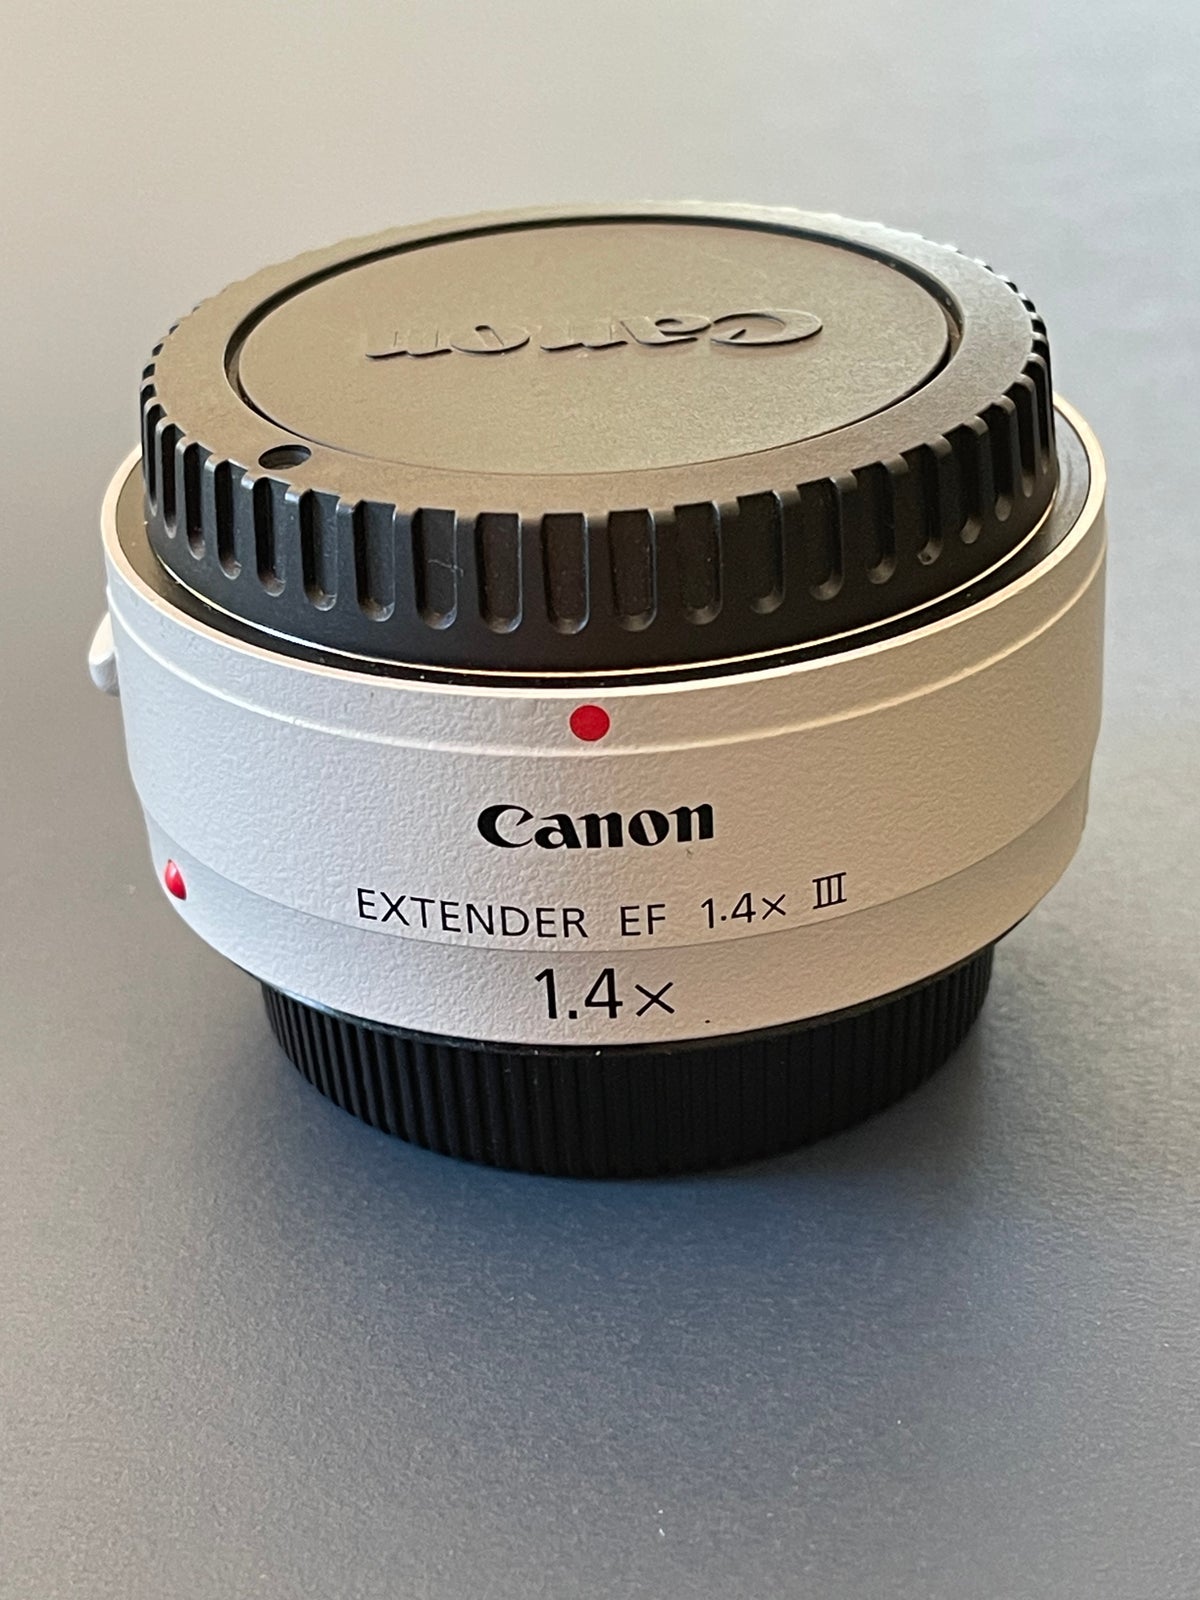 Extender, Canon, Canon extender 1.4 EF III